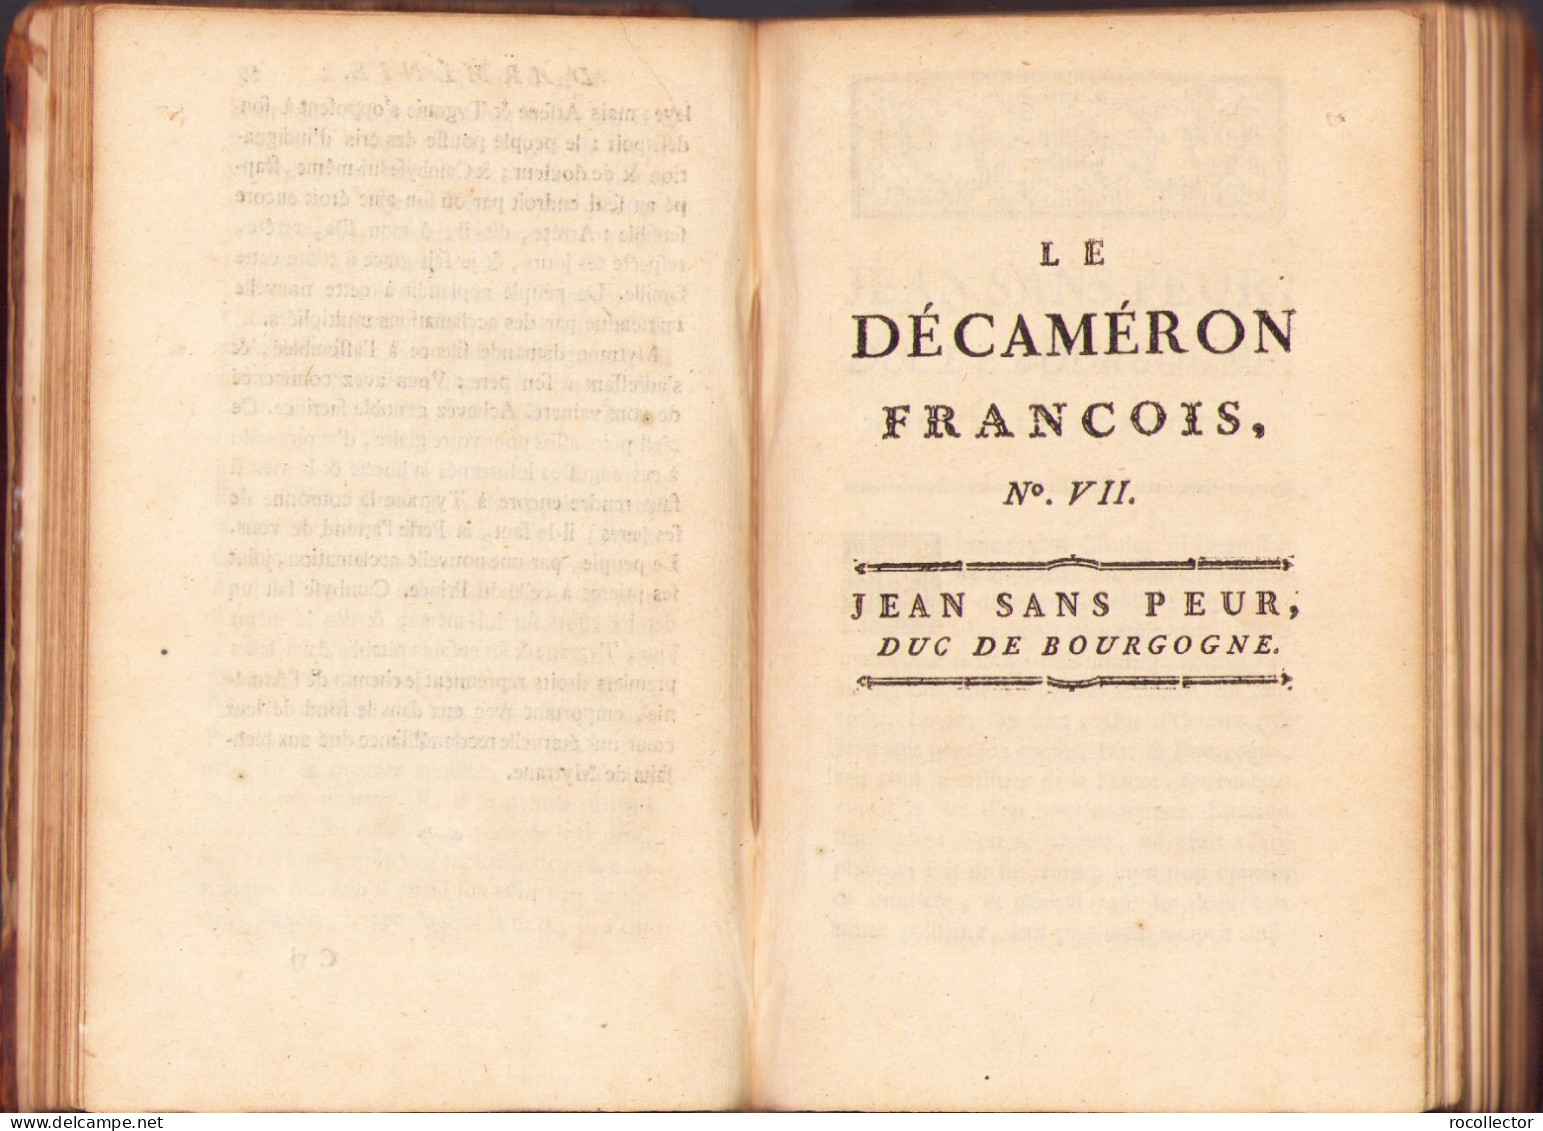 Le Décaméron Français Par M. D’Ussieux, 1775, Tome Second, A Maestricht 578SP - Livres Anciens